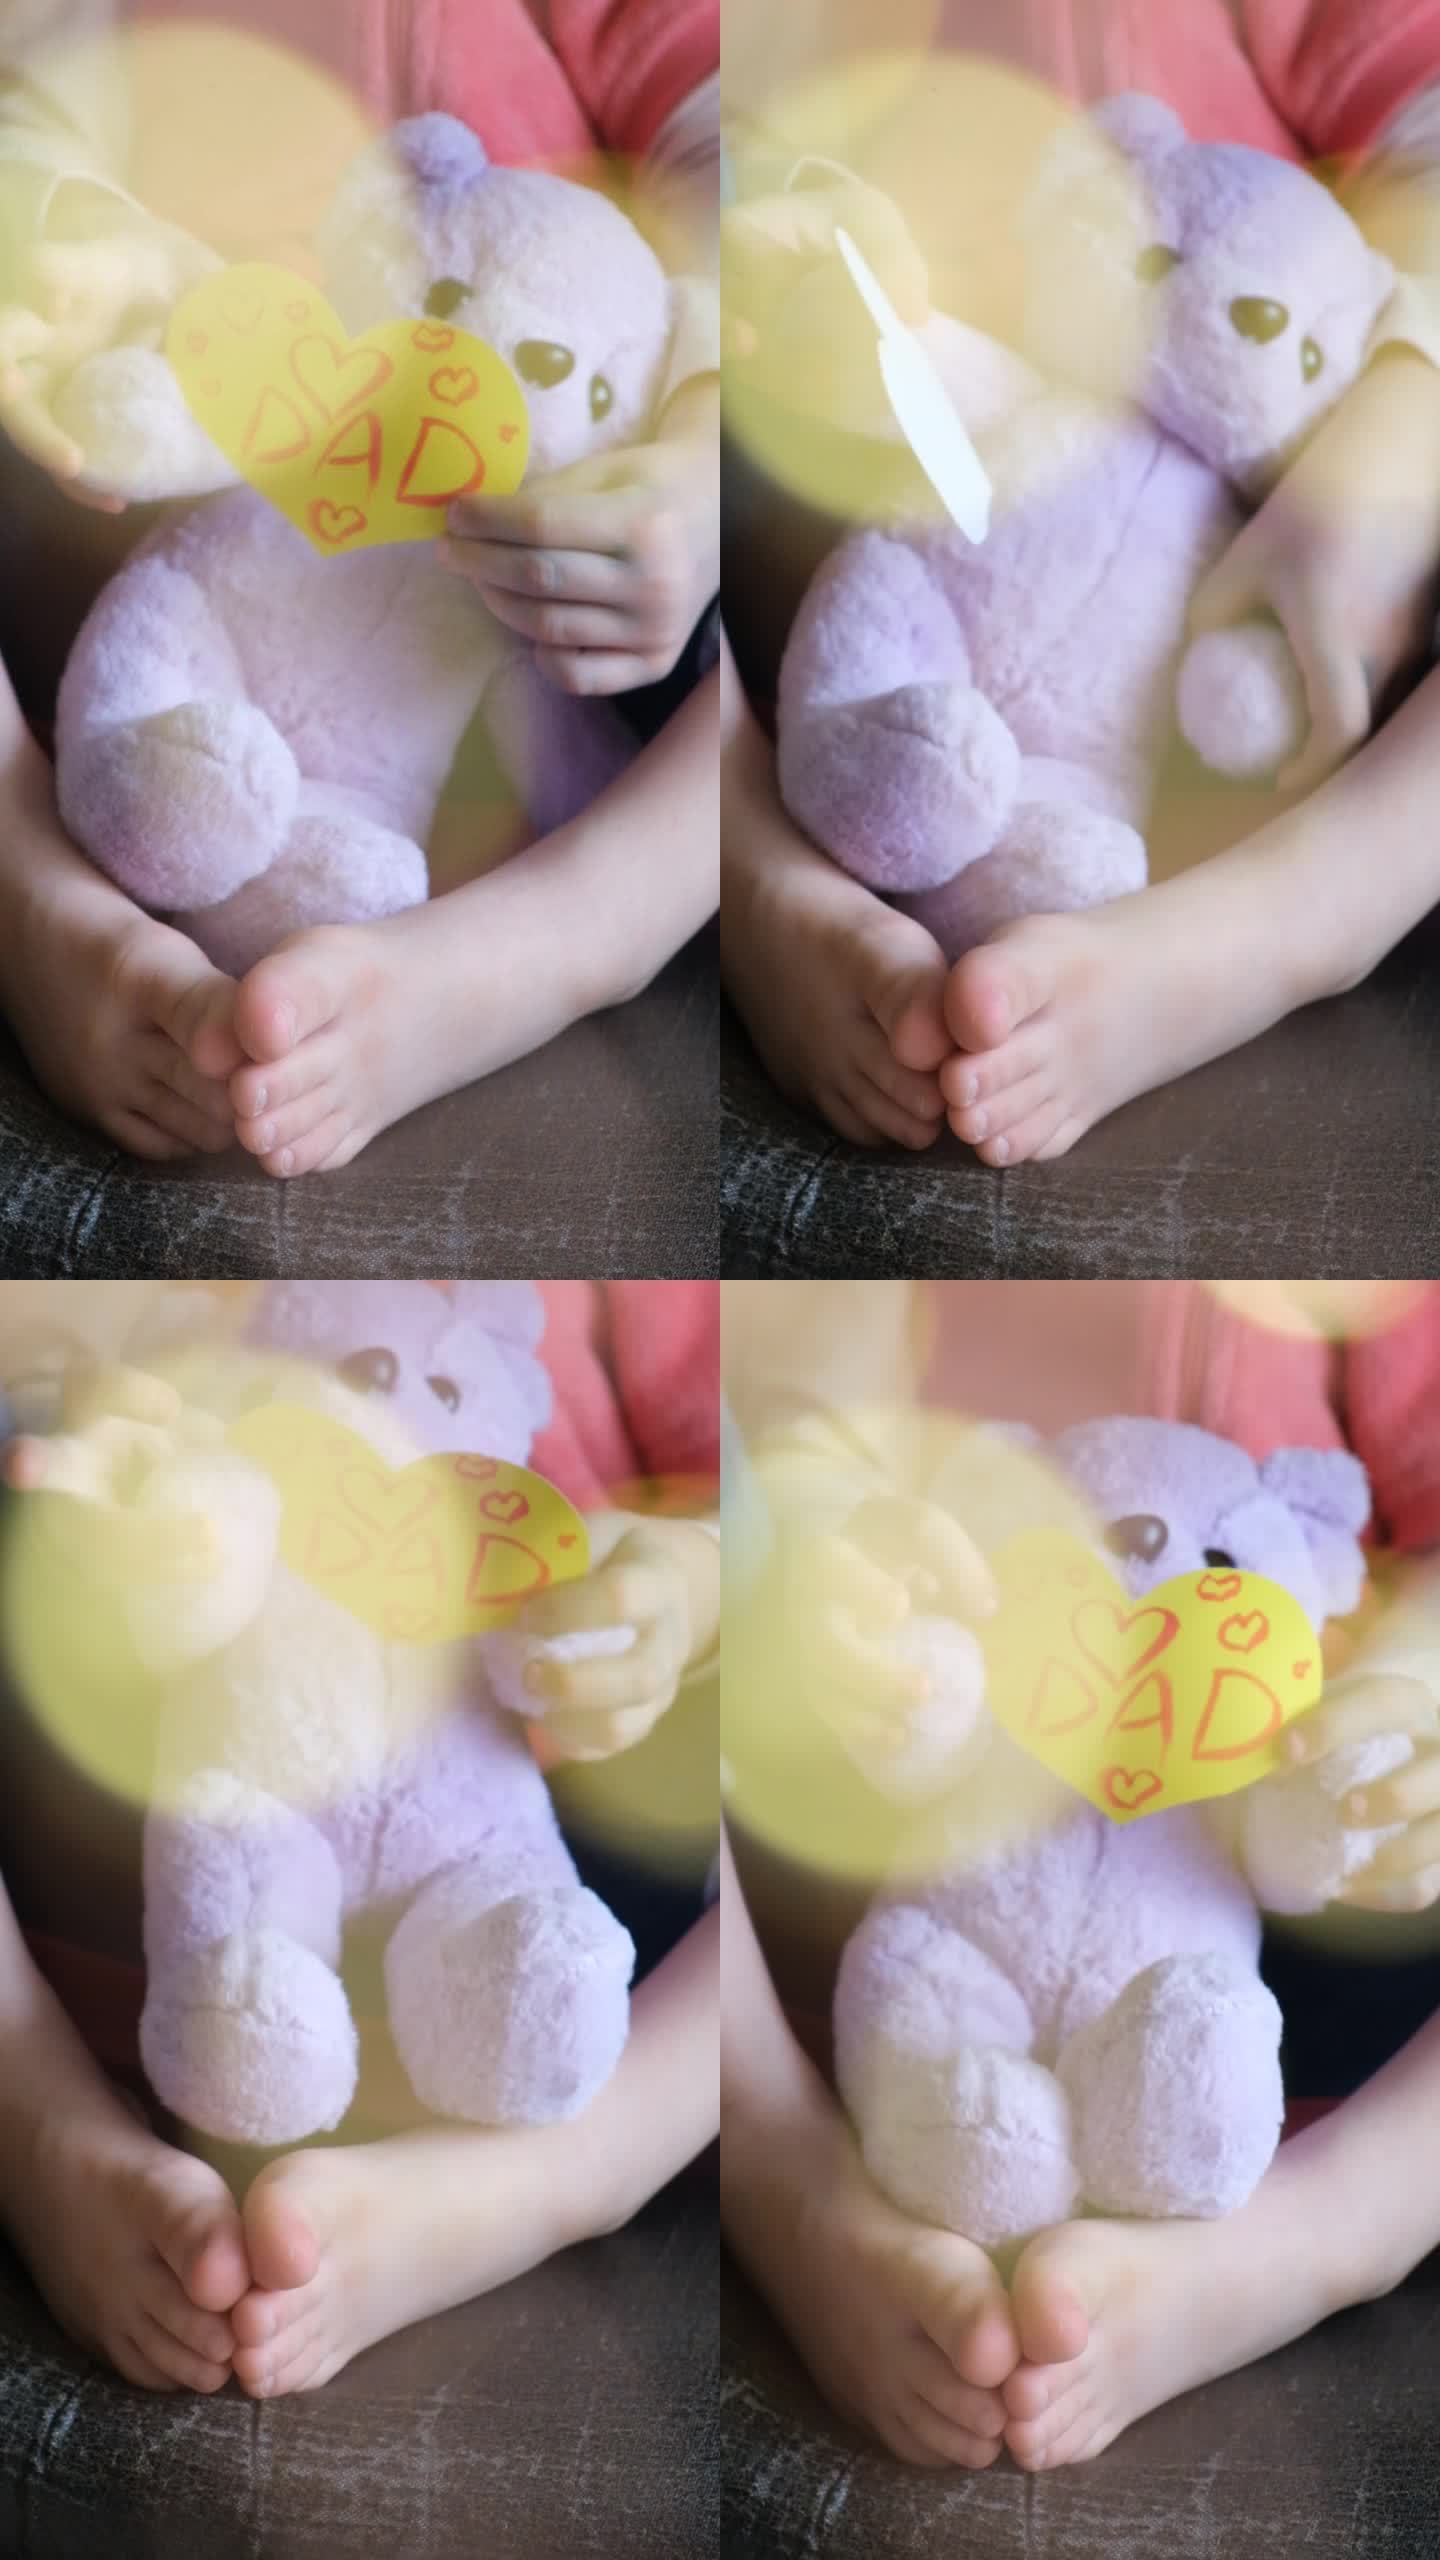 小女孩手持可爱的泰迪熊玩具和手工制作的心形父亲节贺卡。爸爸的文本